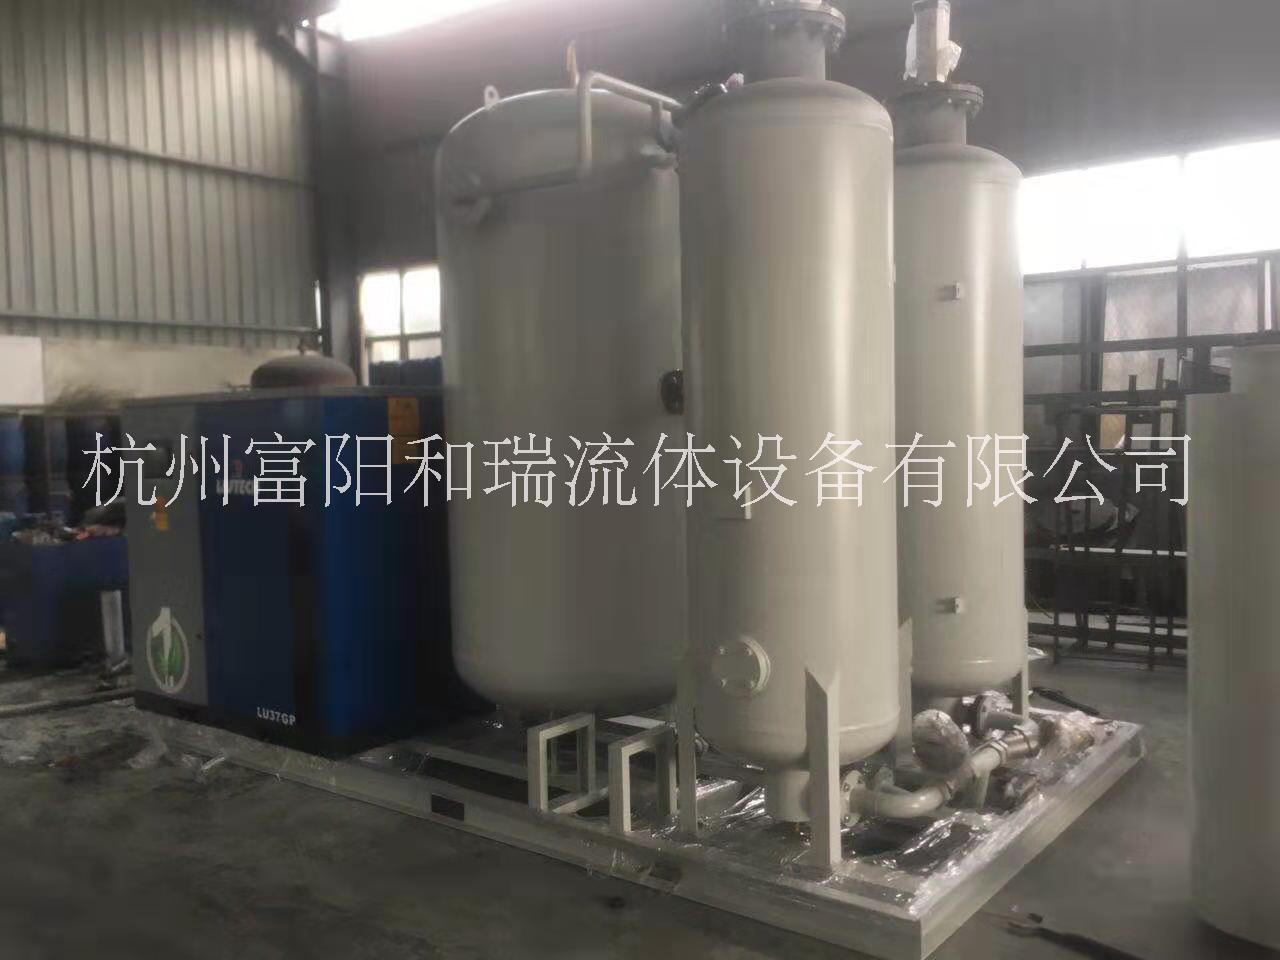 福建250立方环保水处理制氮机报价、直销、生产【杭州富阳和瑞流体设备有限公司】